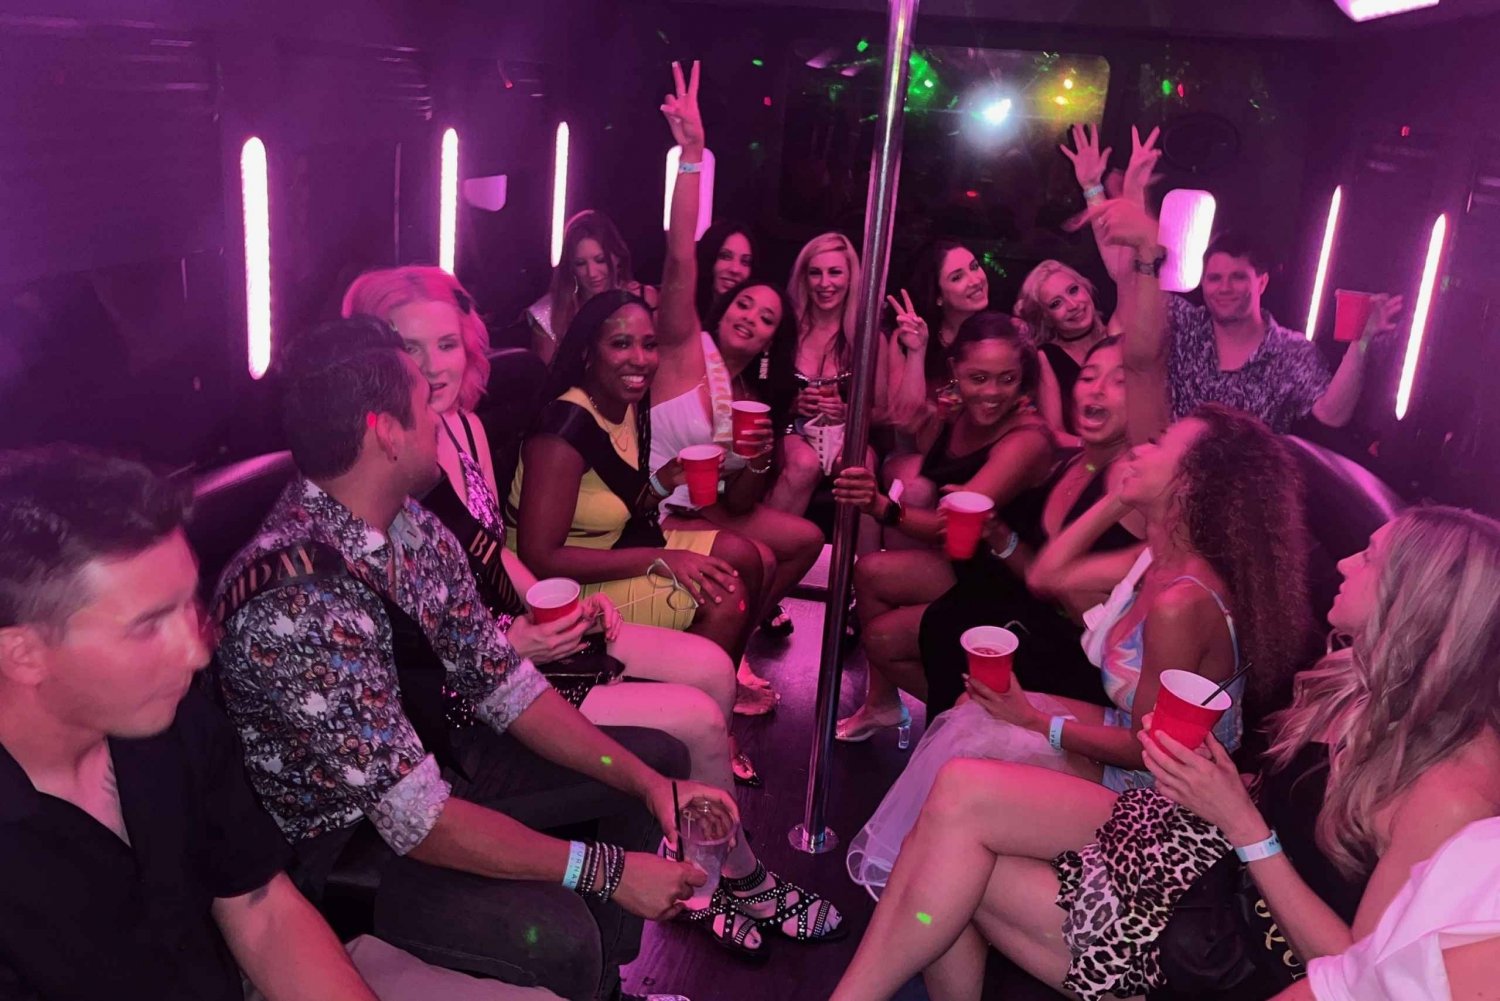 Las Vegas: Excursão VIP à vida noturna para bares, boates e clubes de striptease